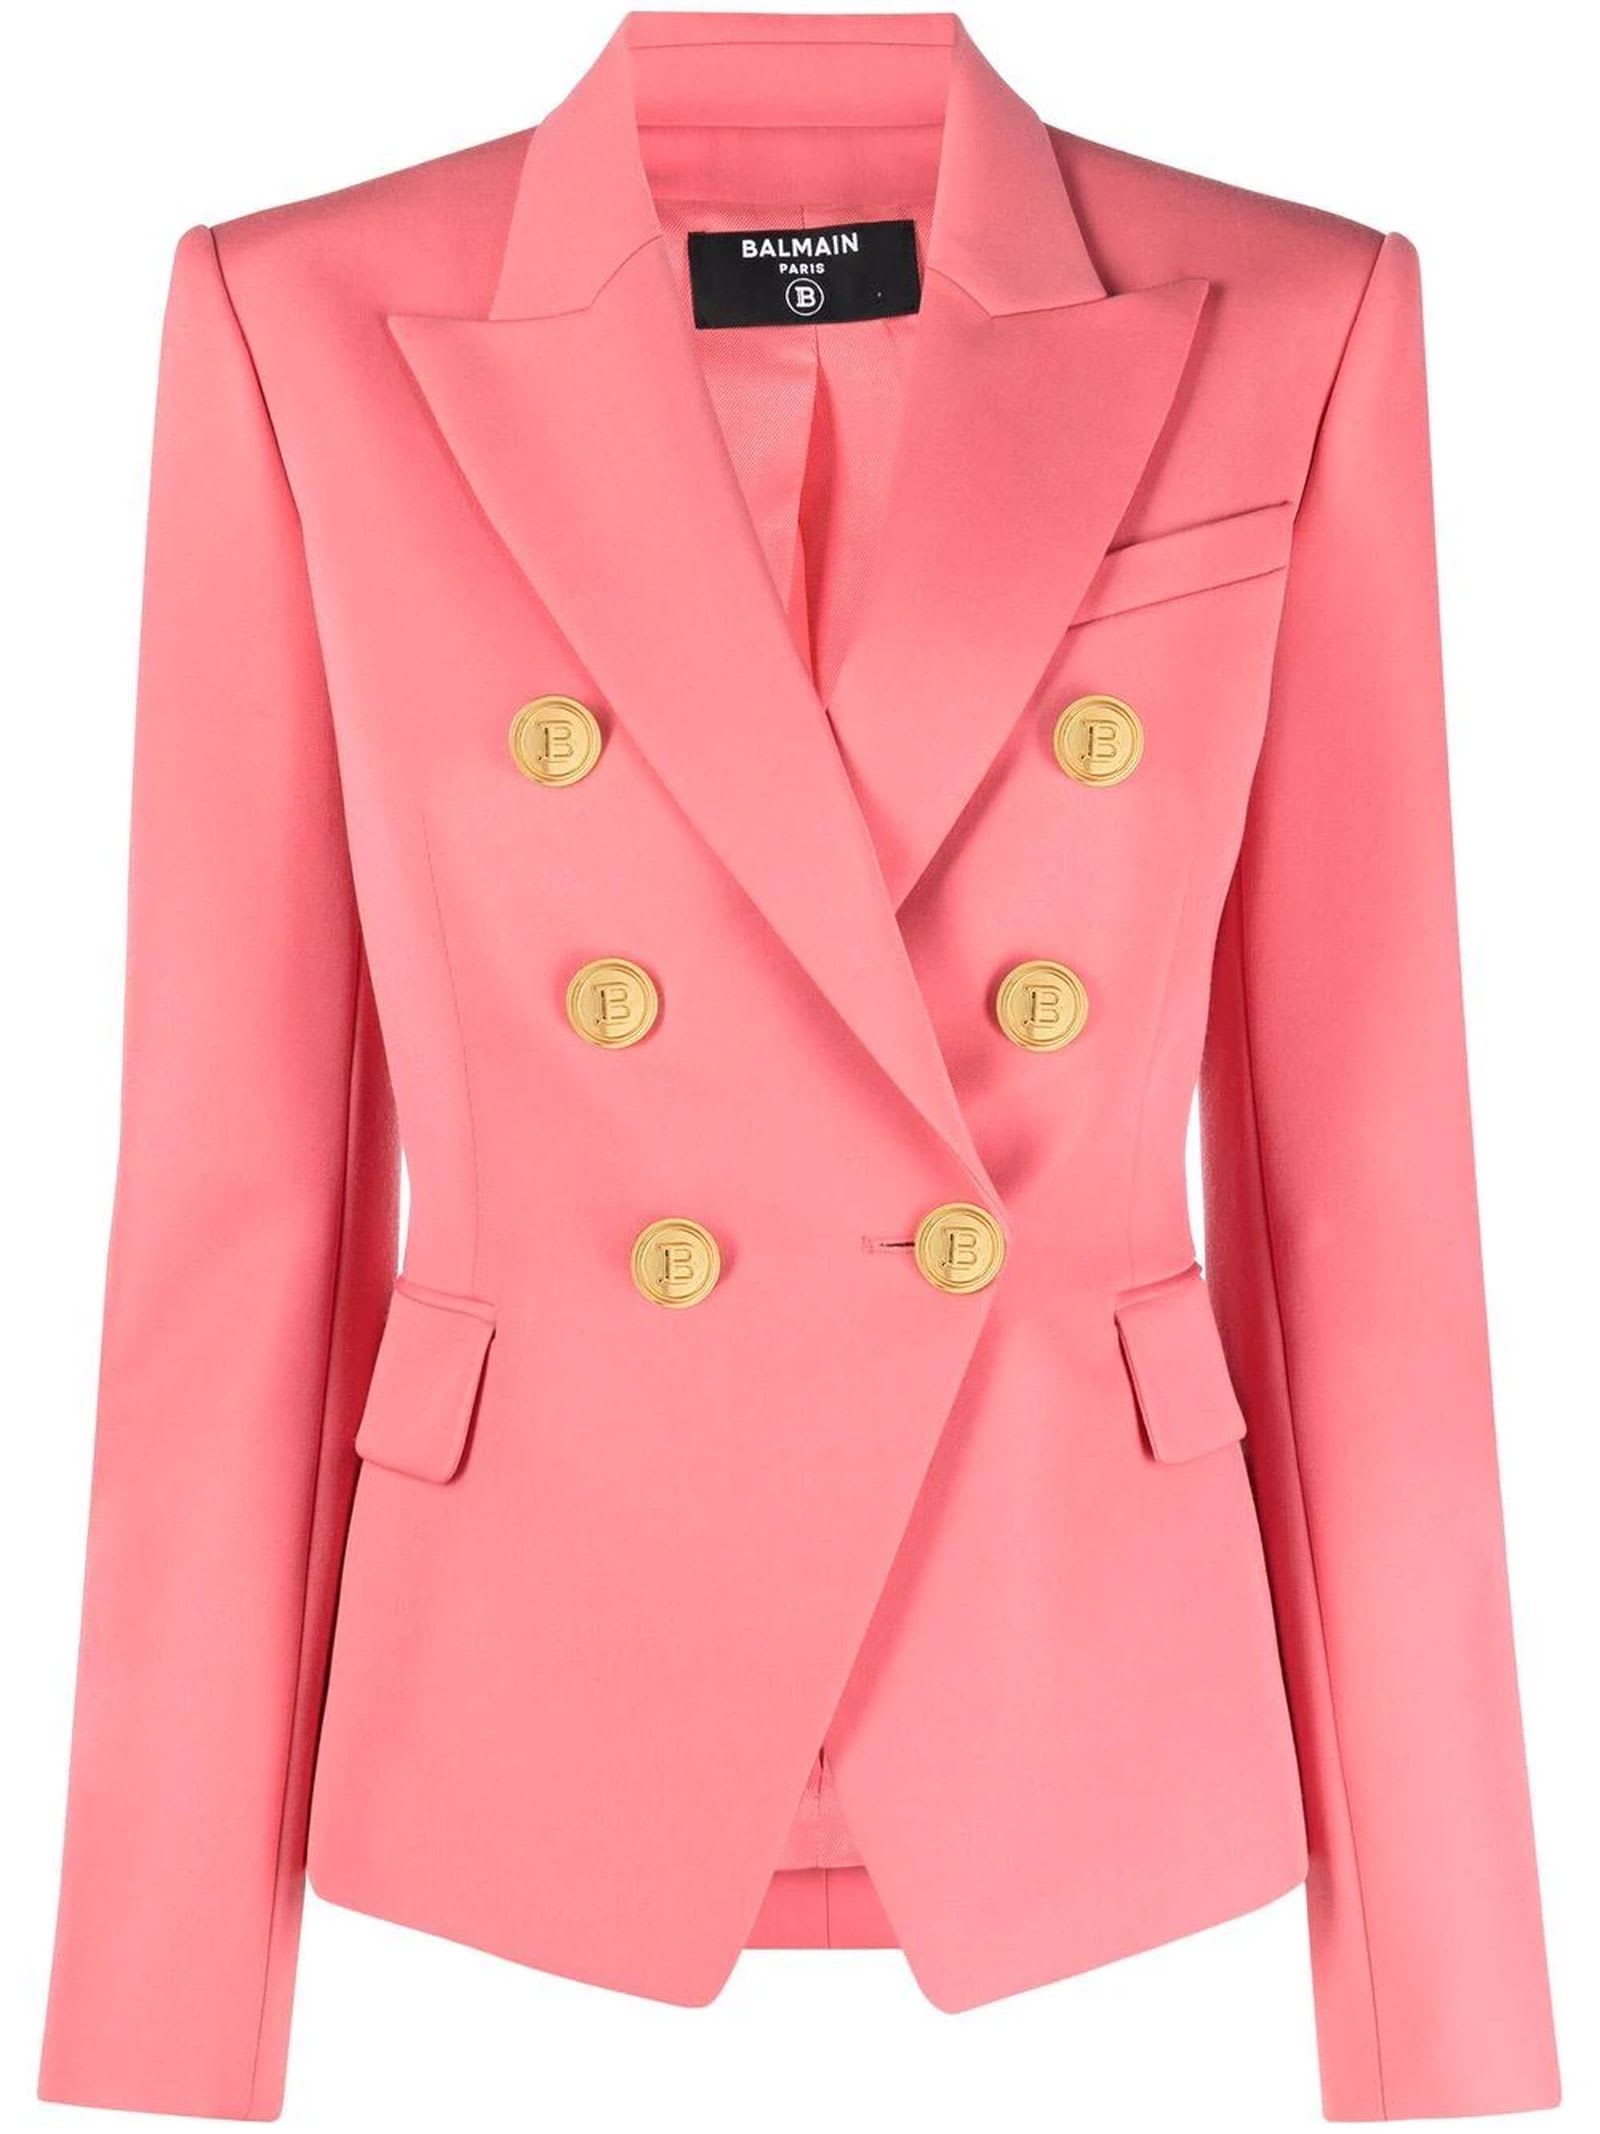 Balmain Salmon Pink Wool Jacket